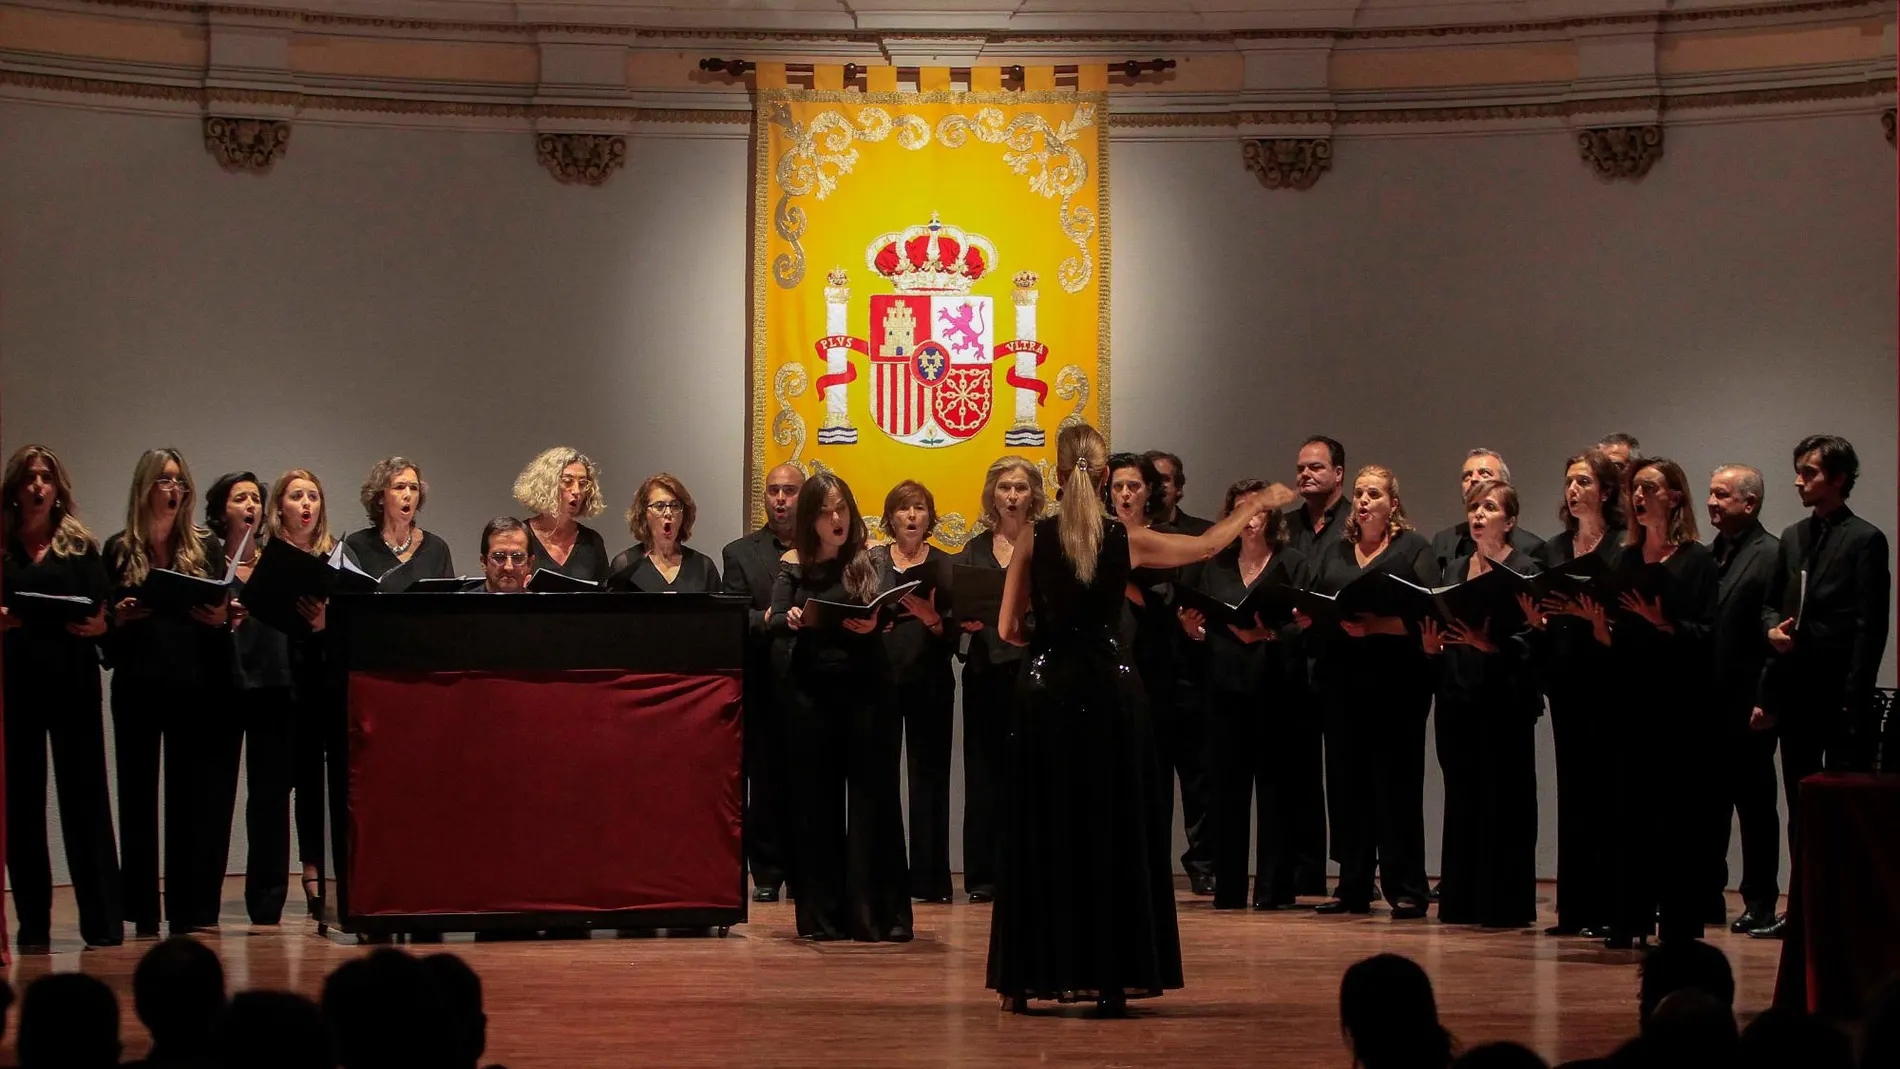 La apertura del acto protagonizada por el Coro del Colegio de Arquitectos de Sevilla / Foto: Manolo Olmedo